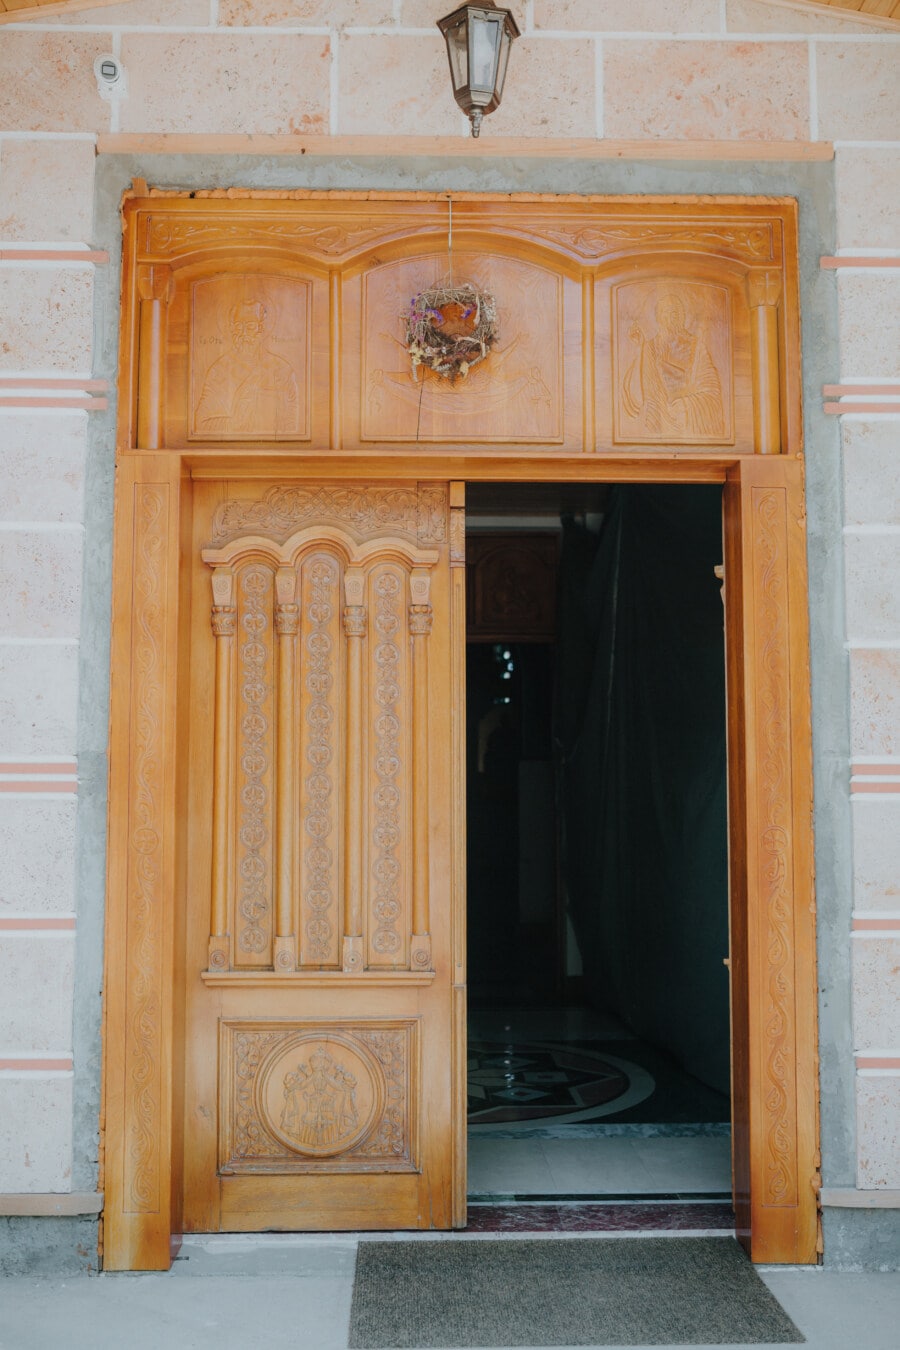 Είσοδος, πύλη, πύλη, μπροστινή πόρτα, μοναστήρι, Ξυλουργικές εργασίες, πόρτα, πόρτα, αρχιτεκτονική, ξύλο